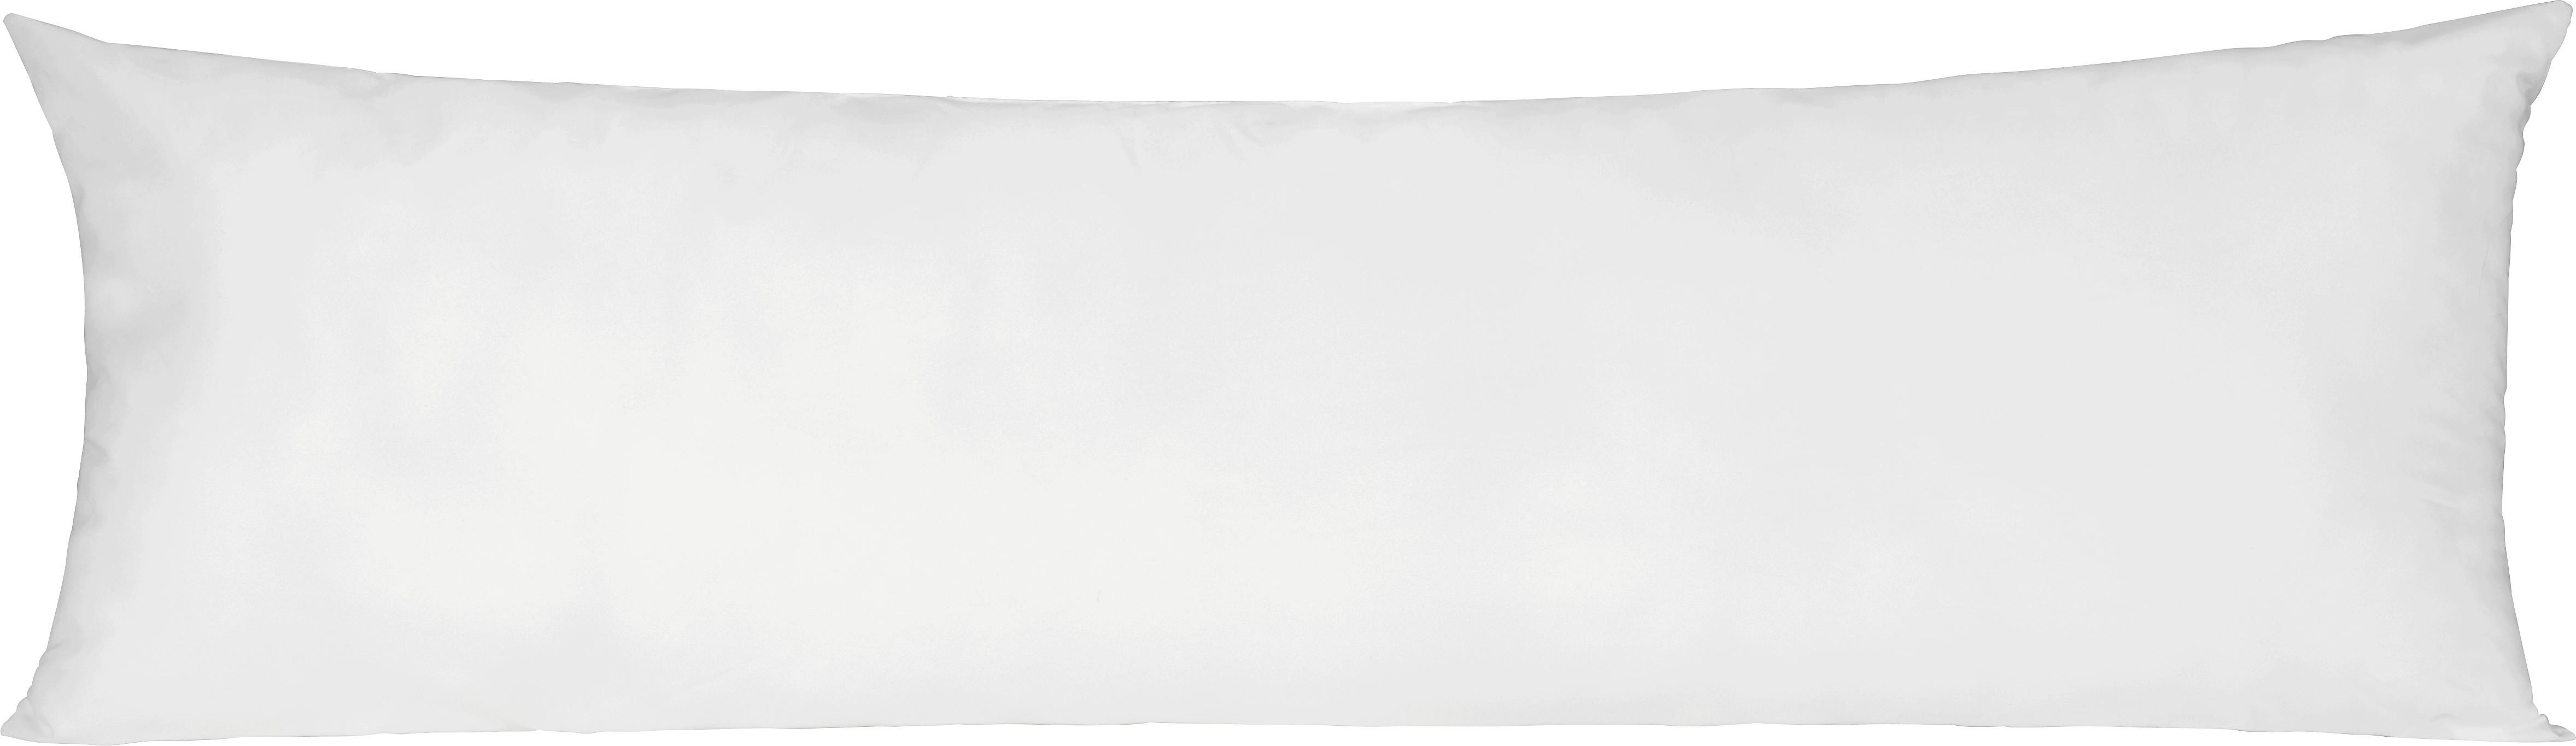 Seitenschläferkissen Lisi in Weiß ca. 40x120cm - Weiß, Textil (40/120cm) - Nadana